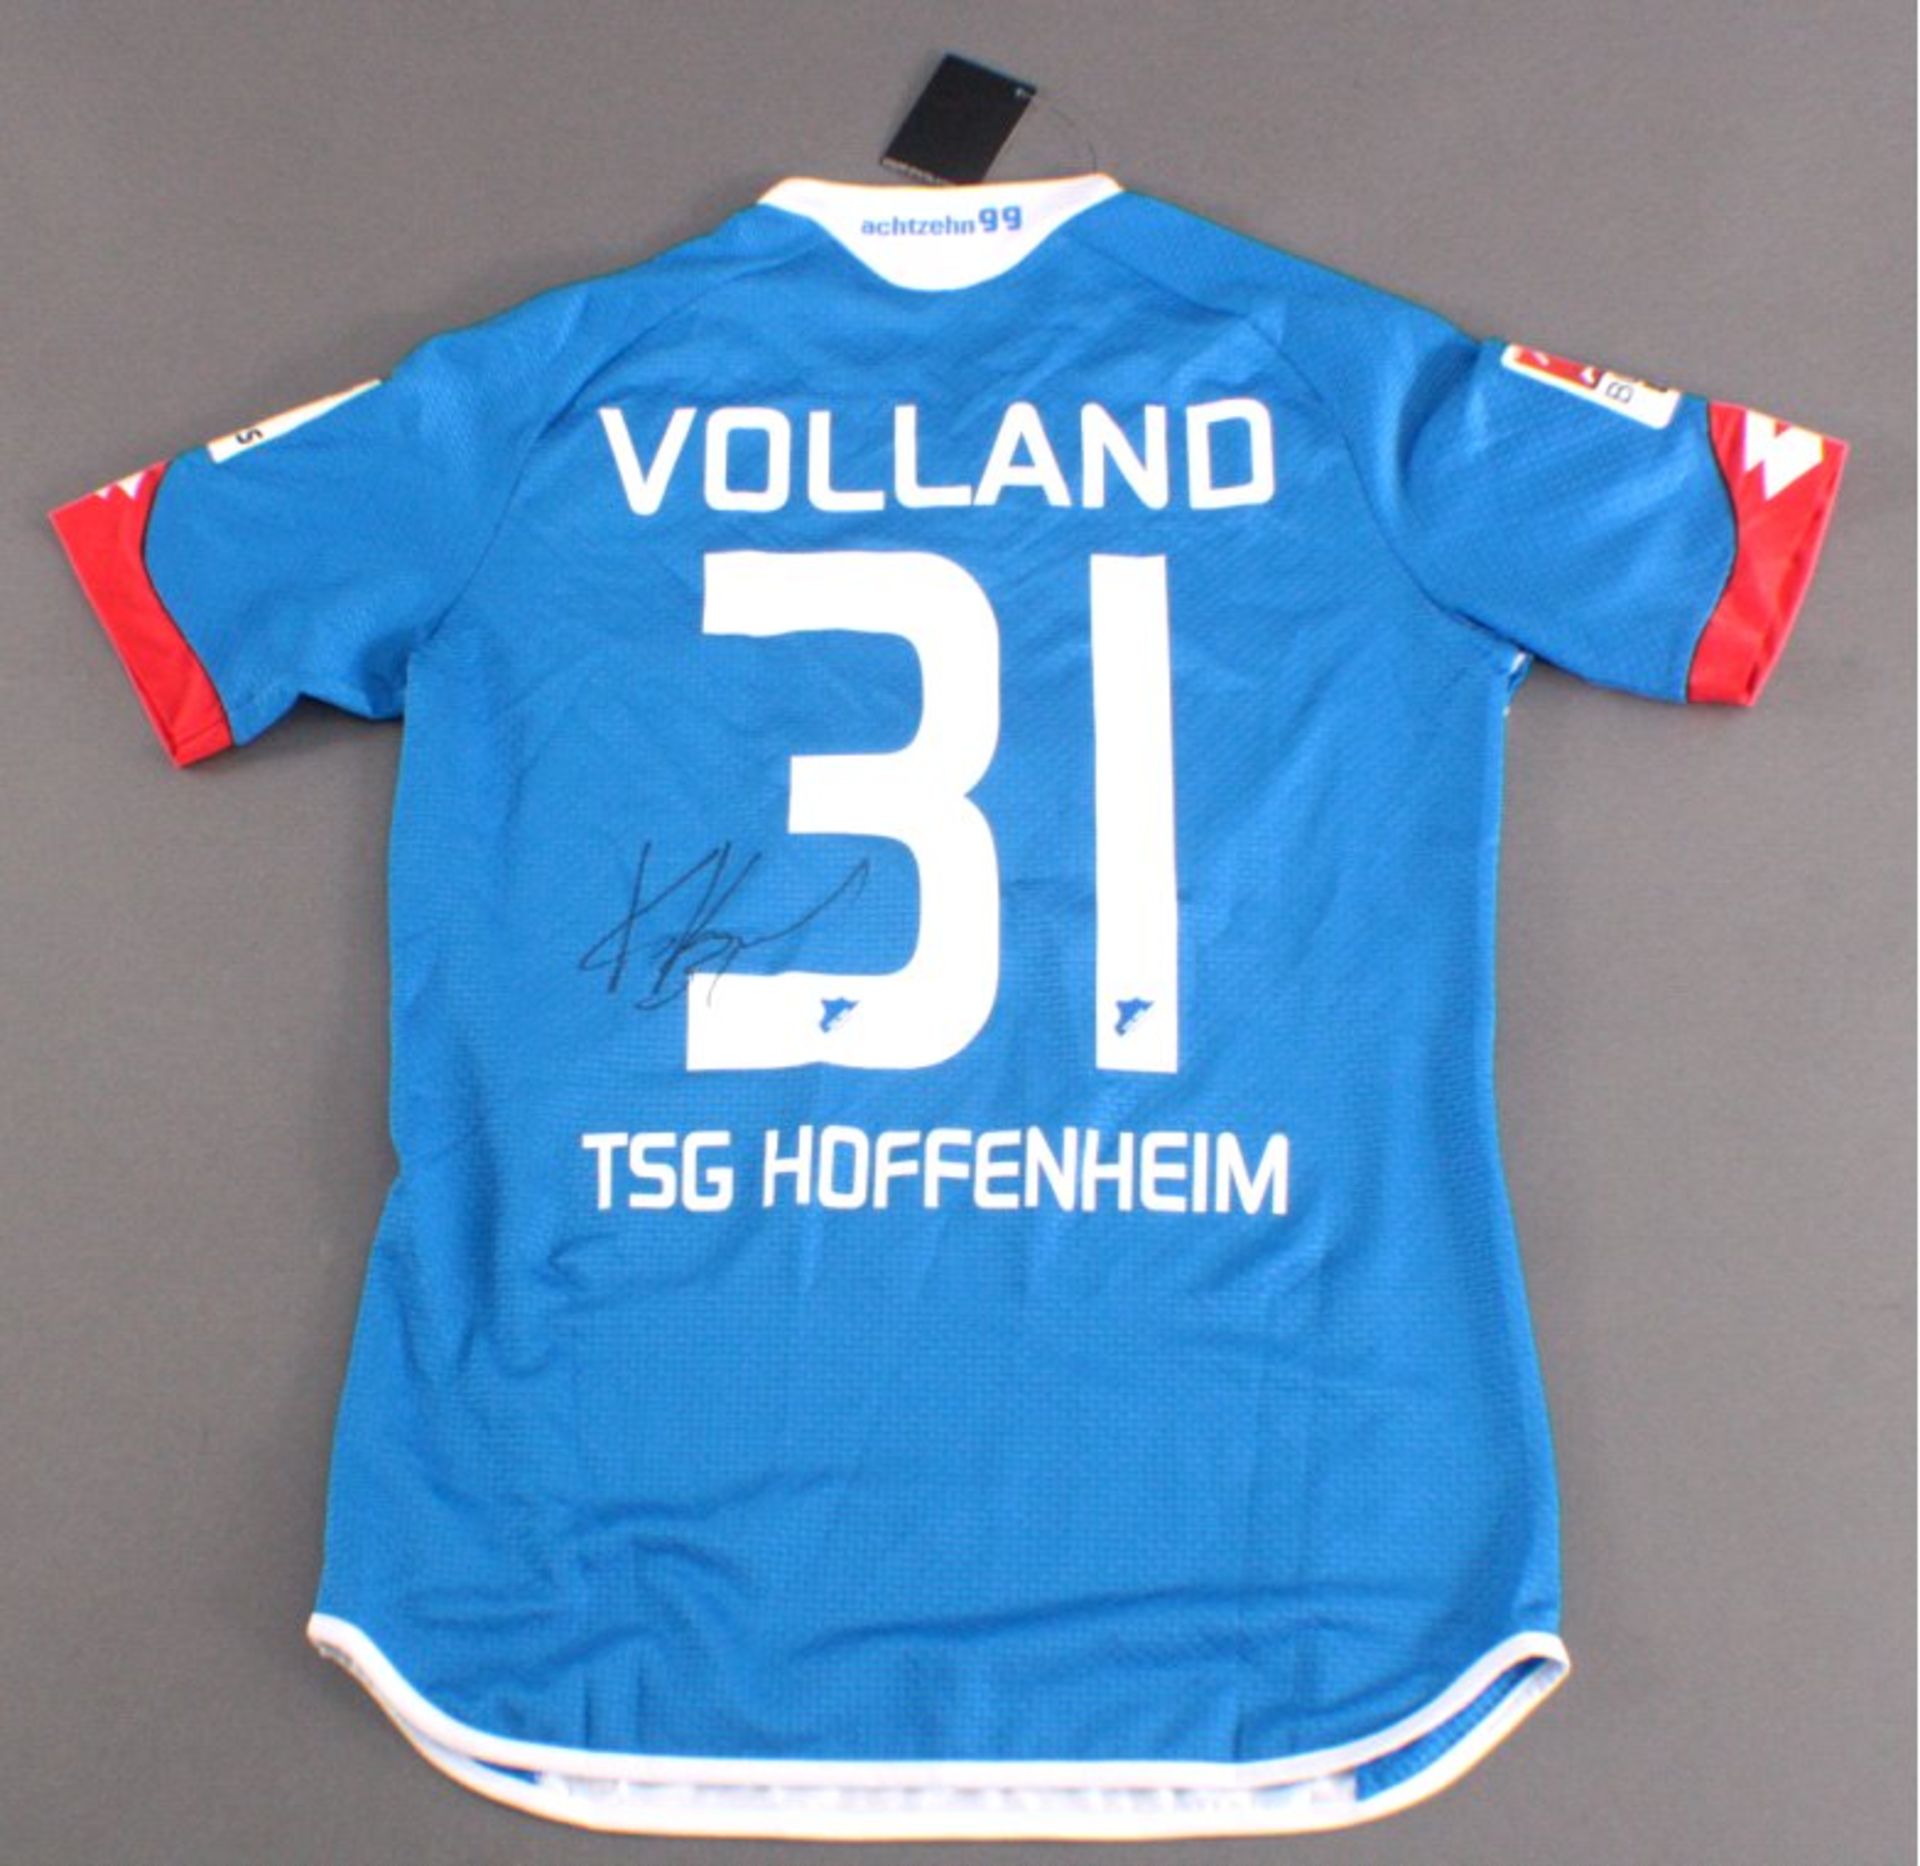 TSG Hoffenheim Trikot mit Signaturbeflockt und signiert "Volland", Größe L